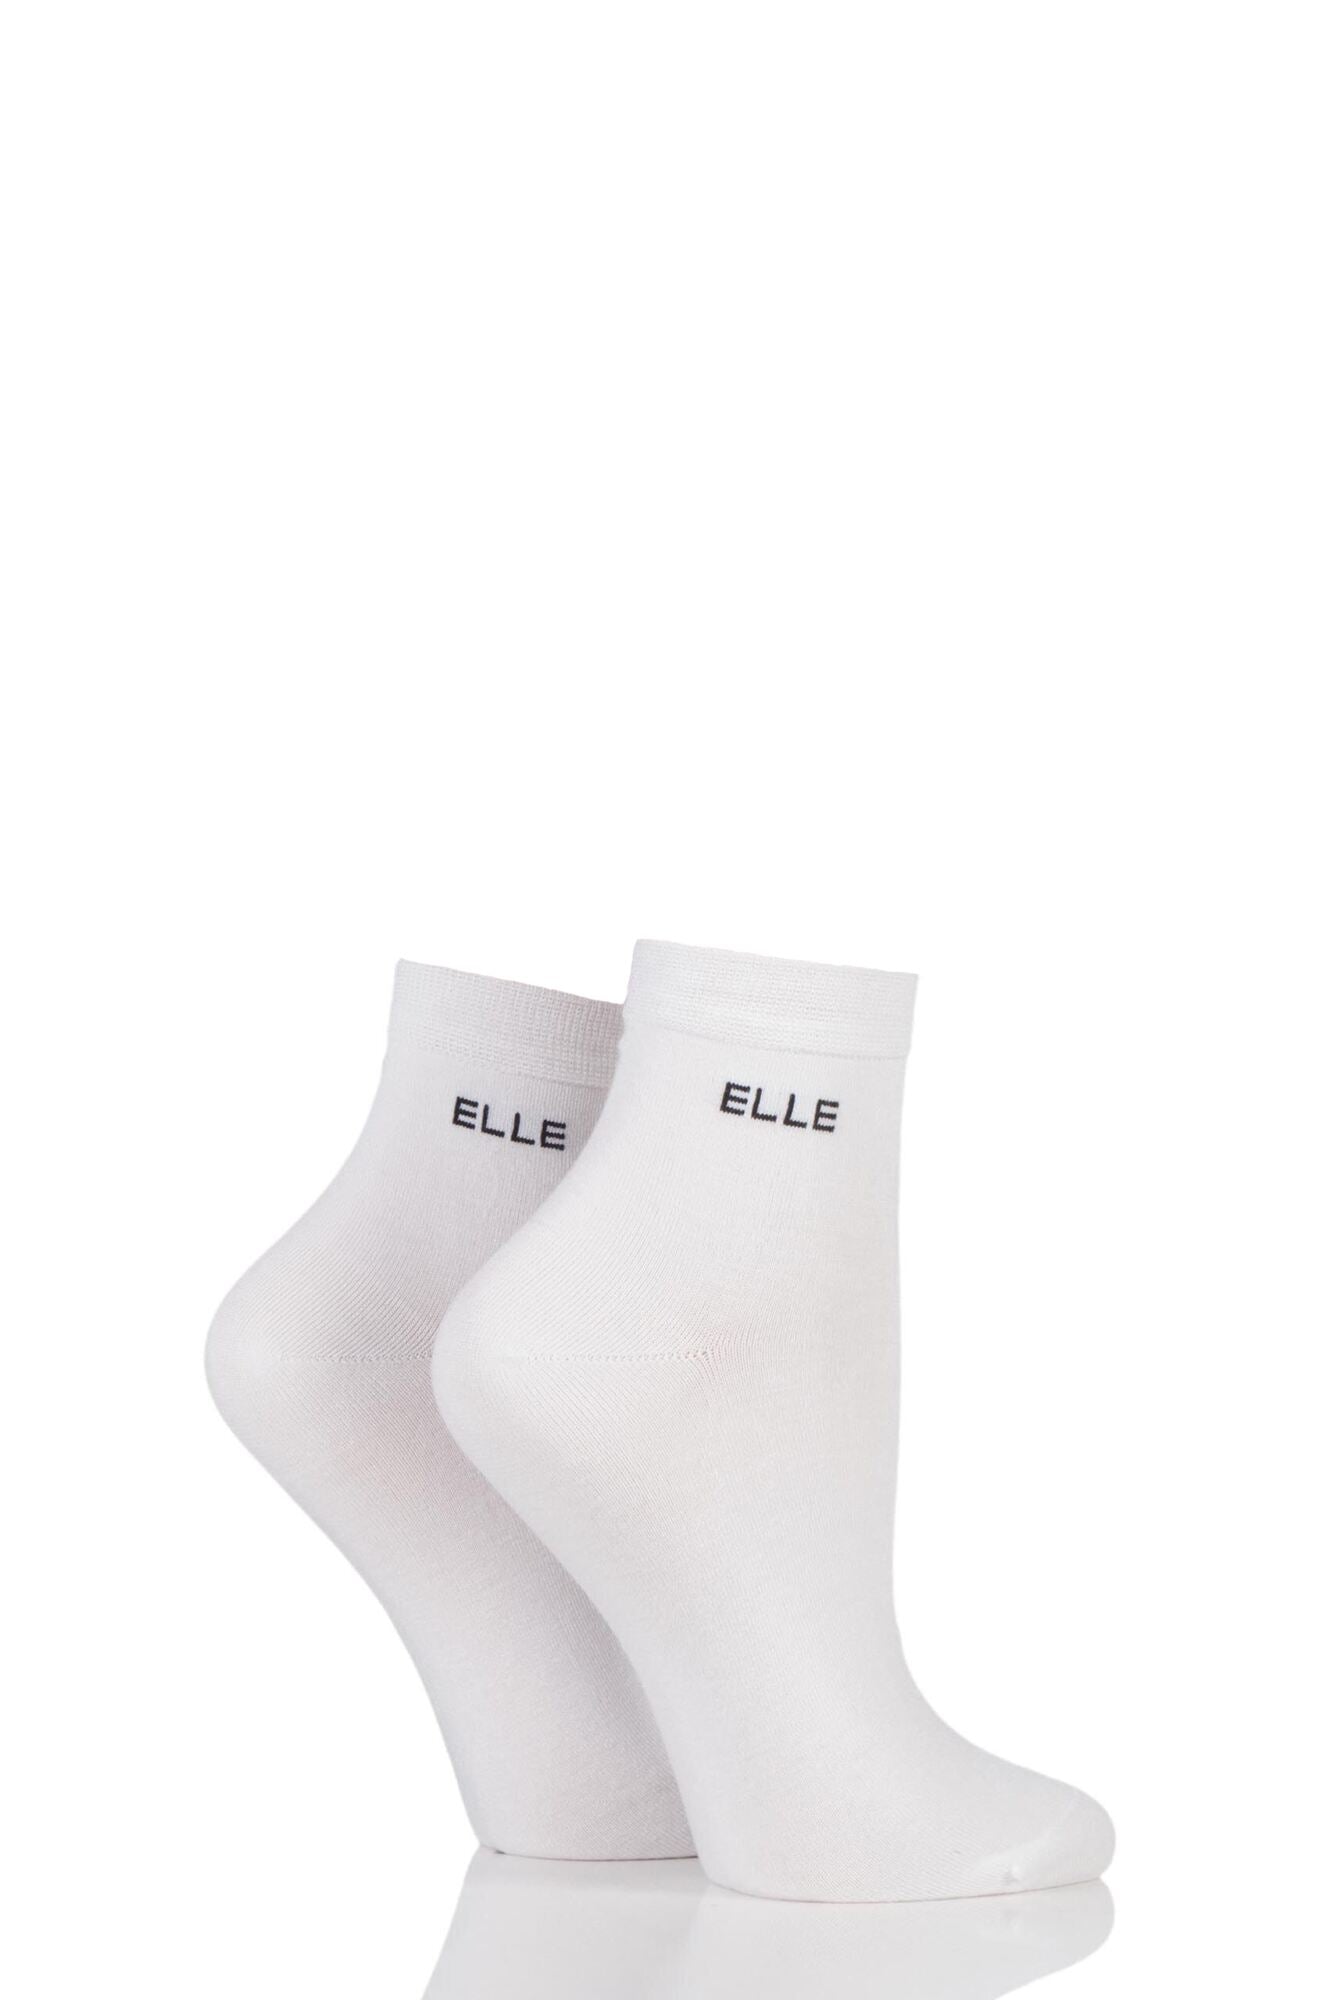 Elle-Bamboo Anklet-2 Pair Pack-White